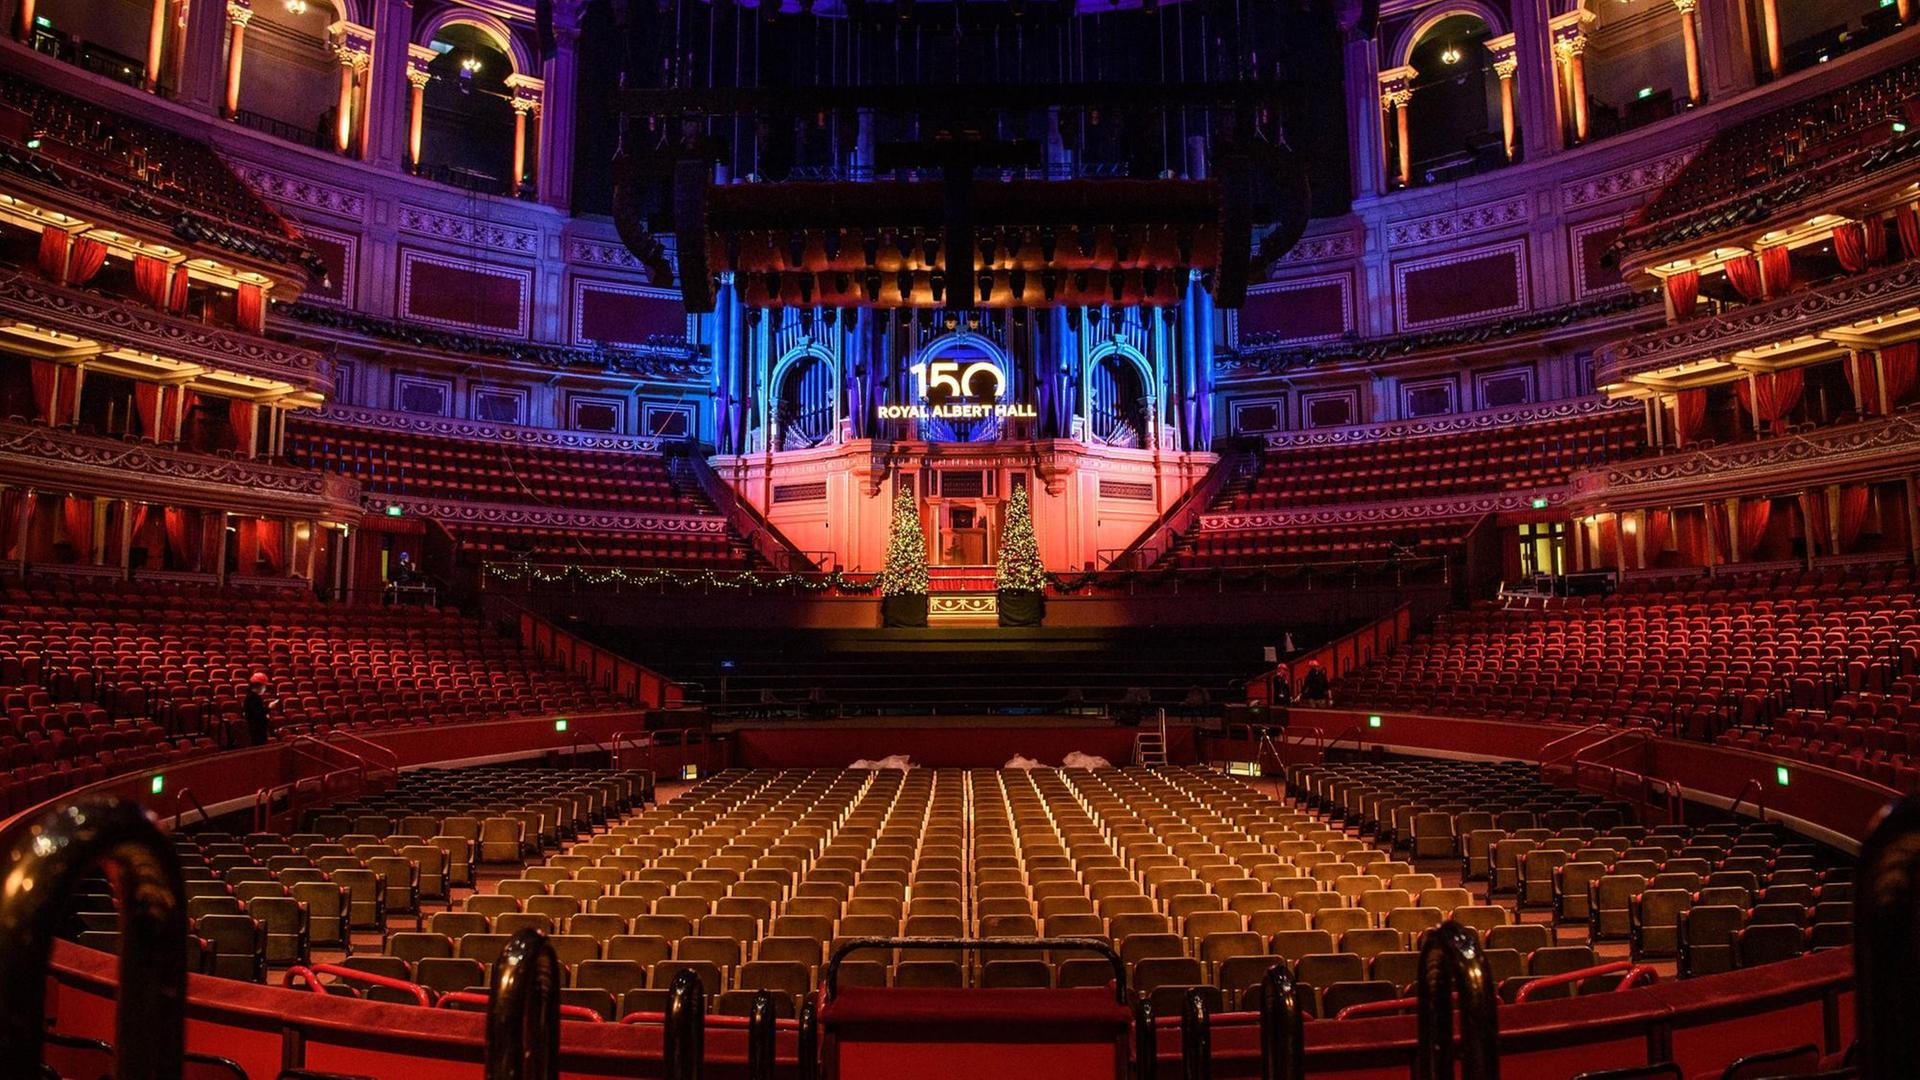 Vor 150 Jahren - Die Eröffnung der Royal Albert Hall in London